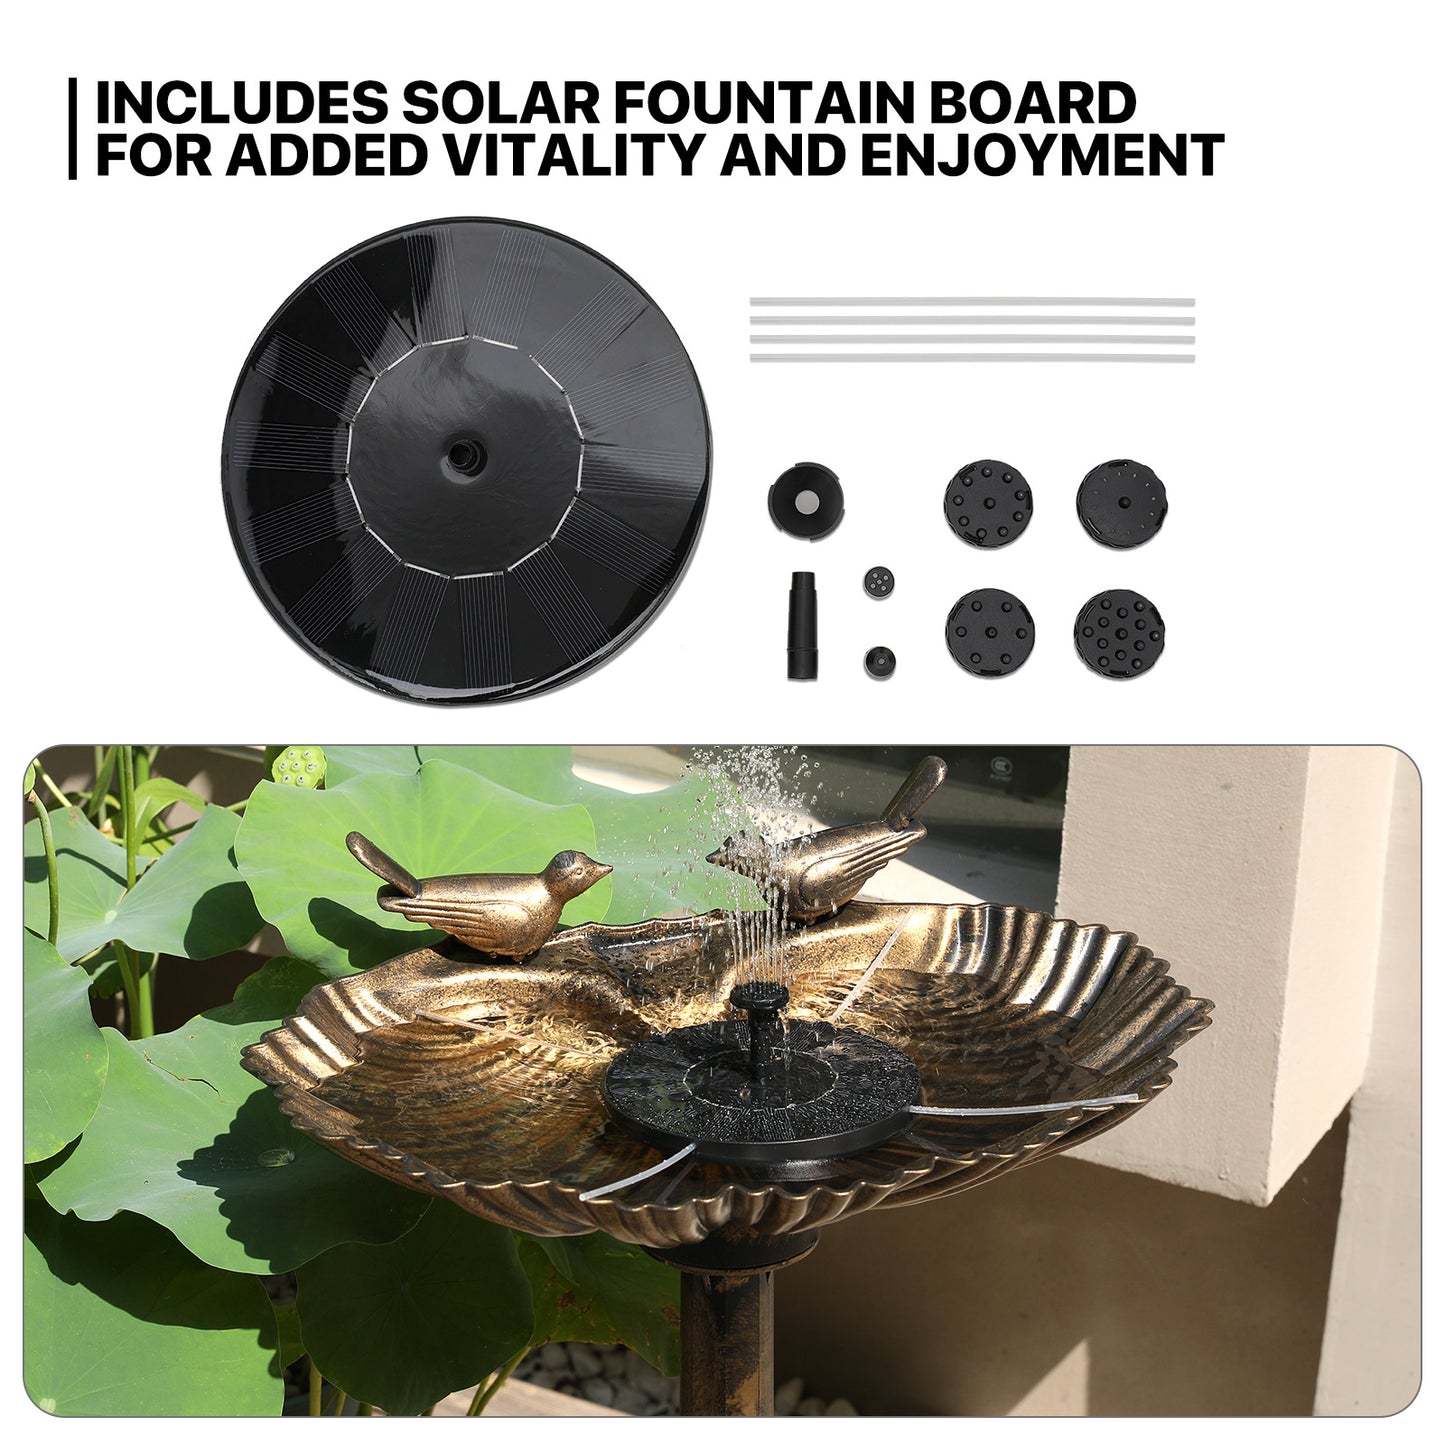 28â€?Garden Bird Bath - Solar Pumb